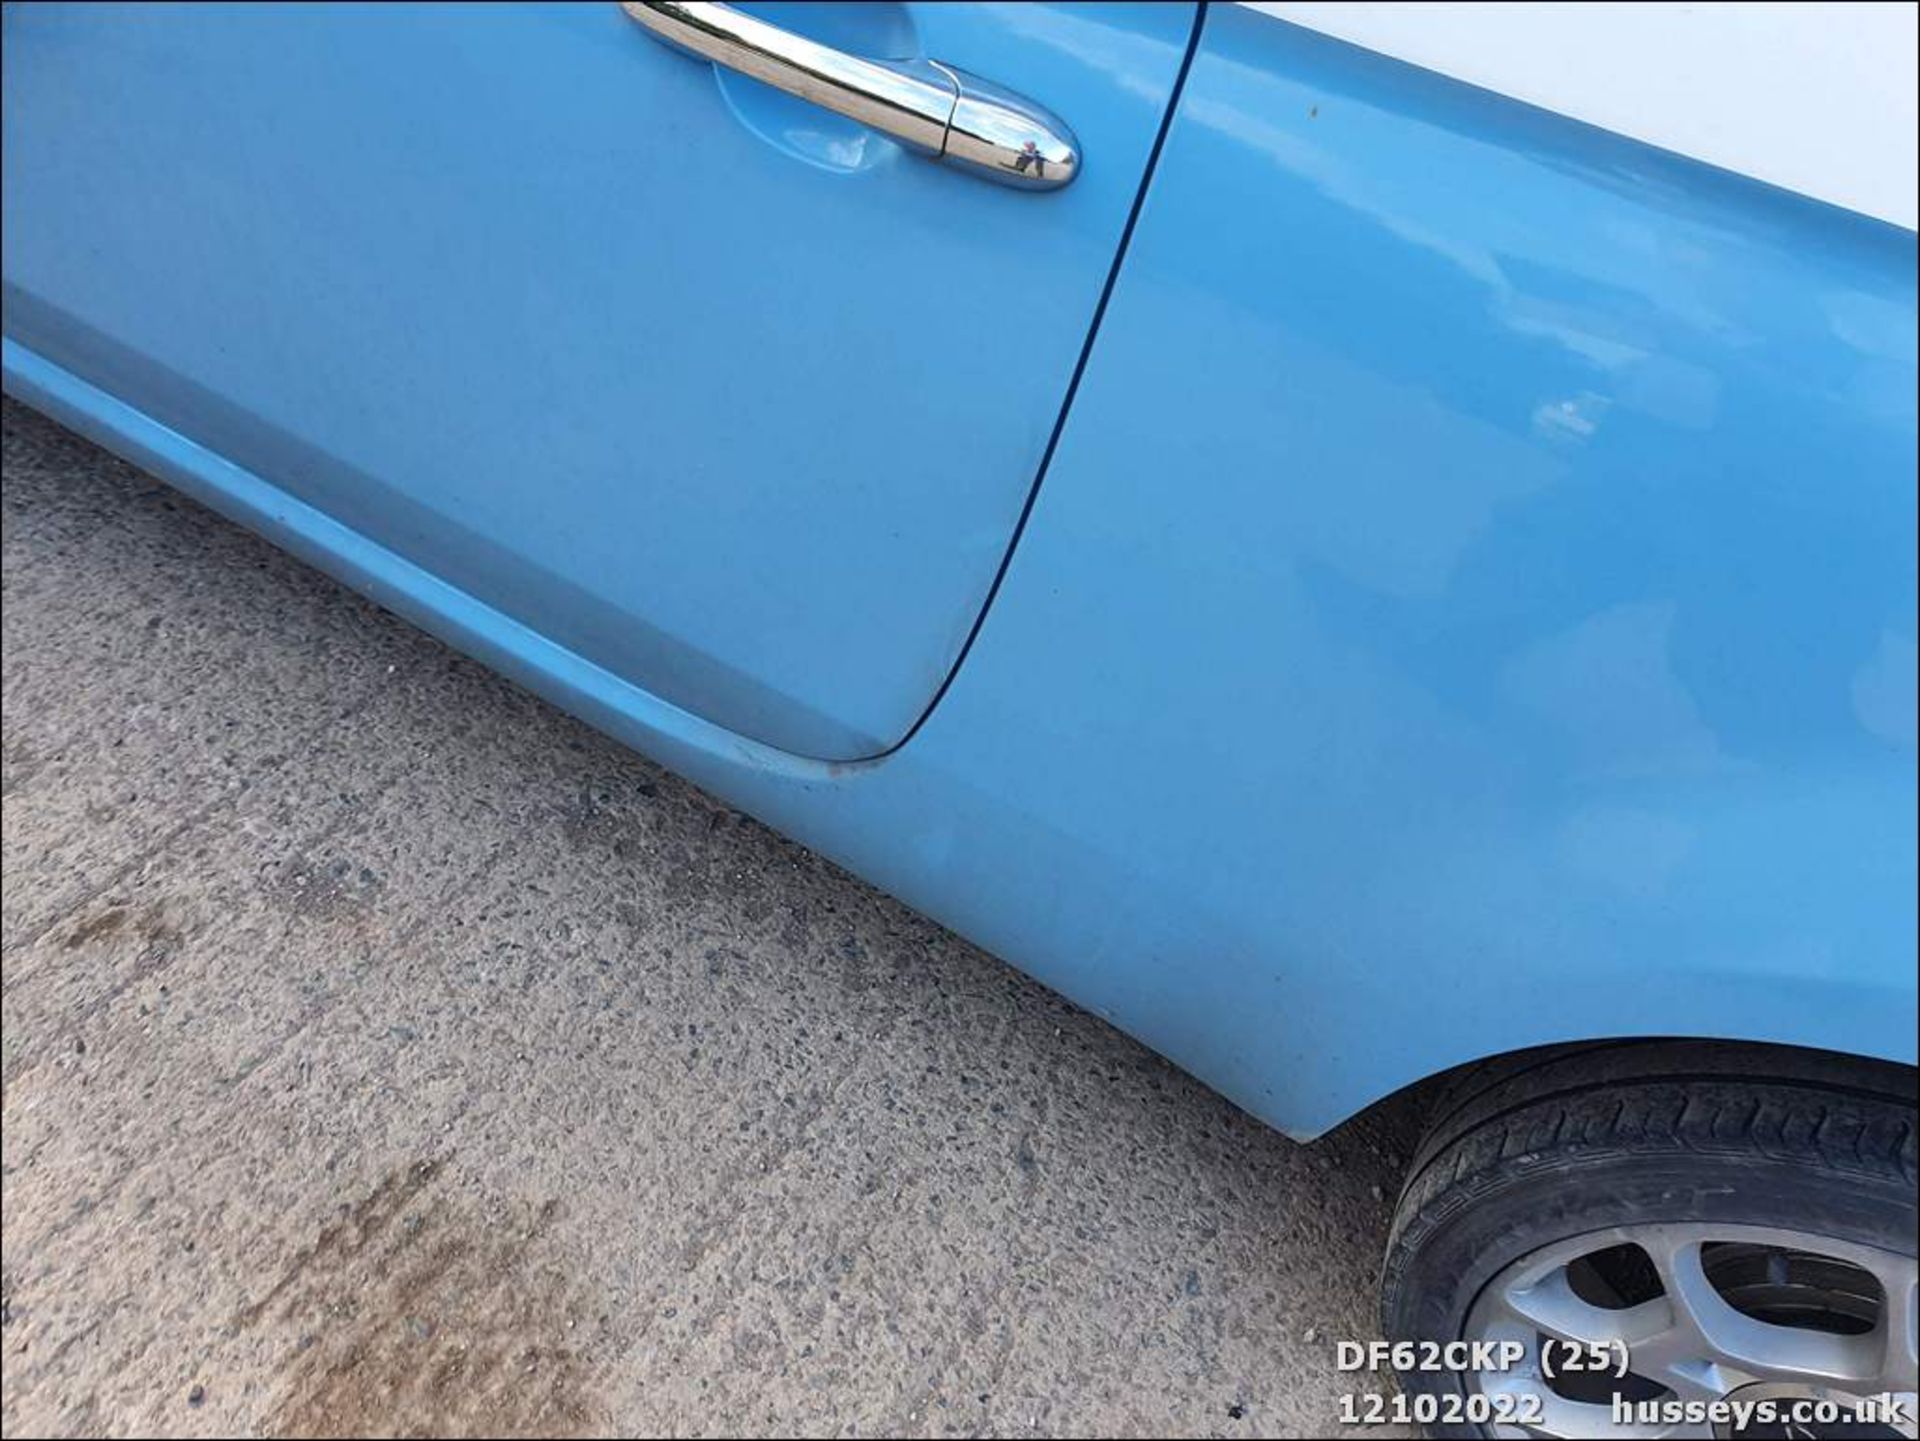 12/62 FIAT 500 LOUNGE RHD - 1242cc 3dr Hatchback (Blue, 62k) - Image 25 of 42